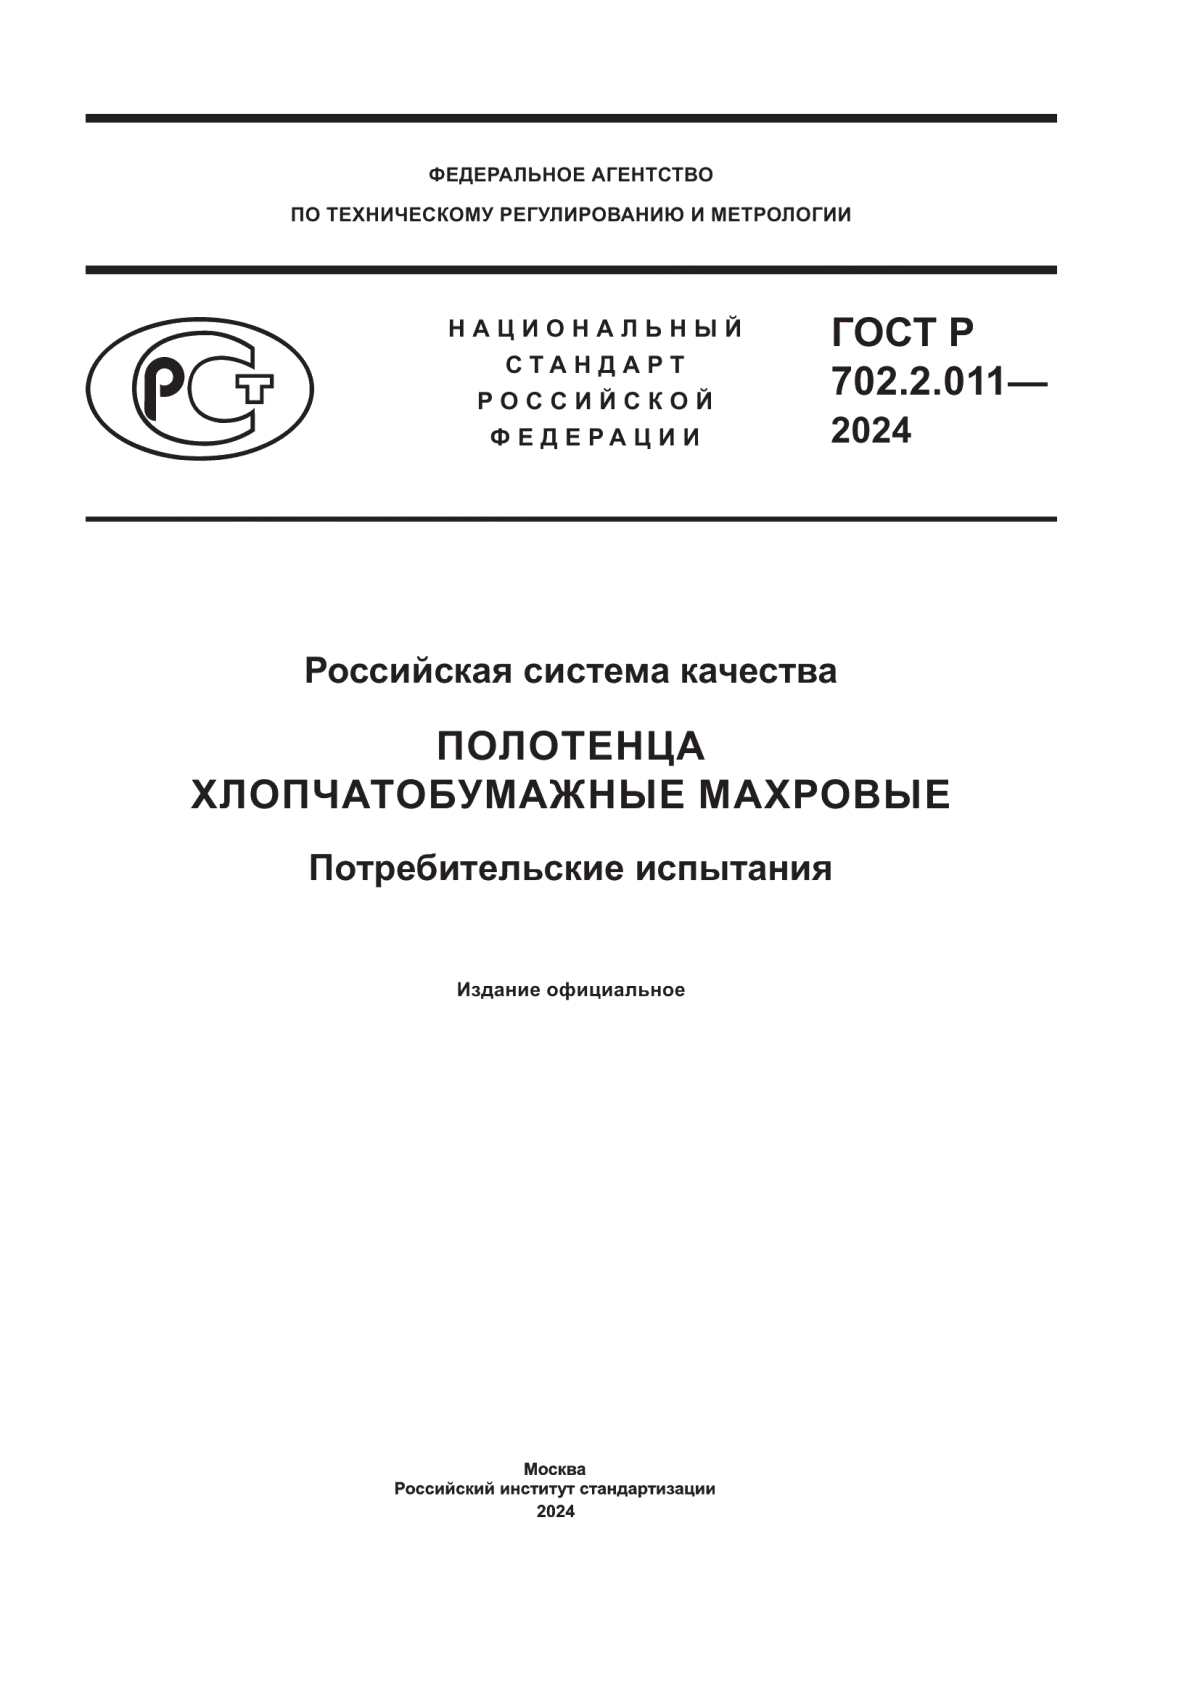 ГОСТ Р 702.2.011-2024 Российская система качества. Полотенца хлопчатобумажные махровые. Потребительские испытания